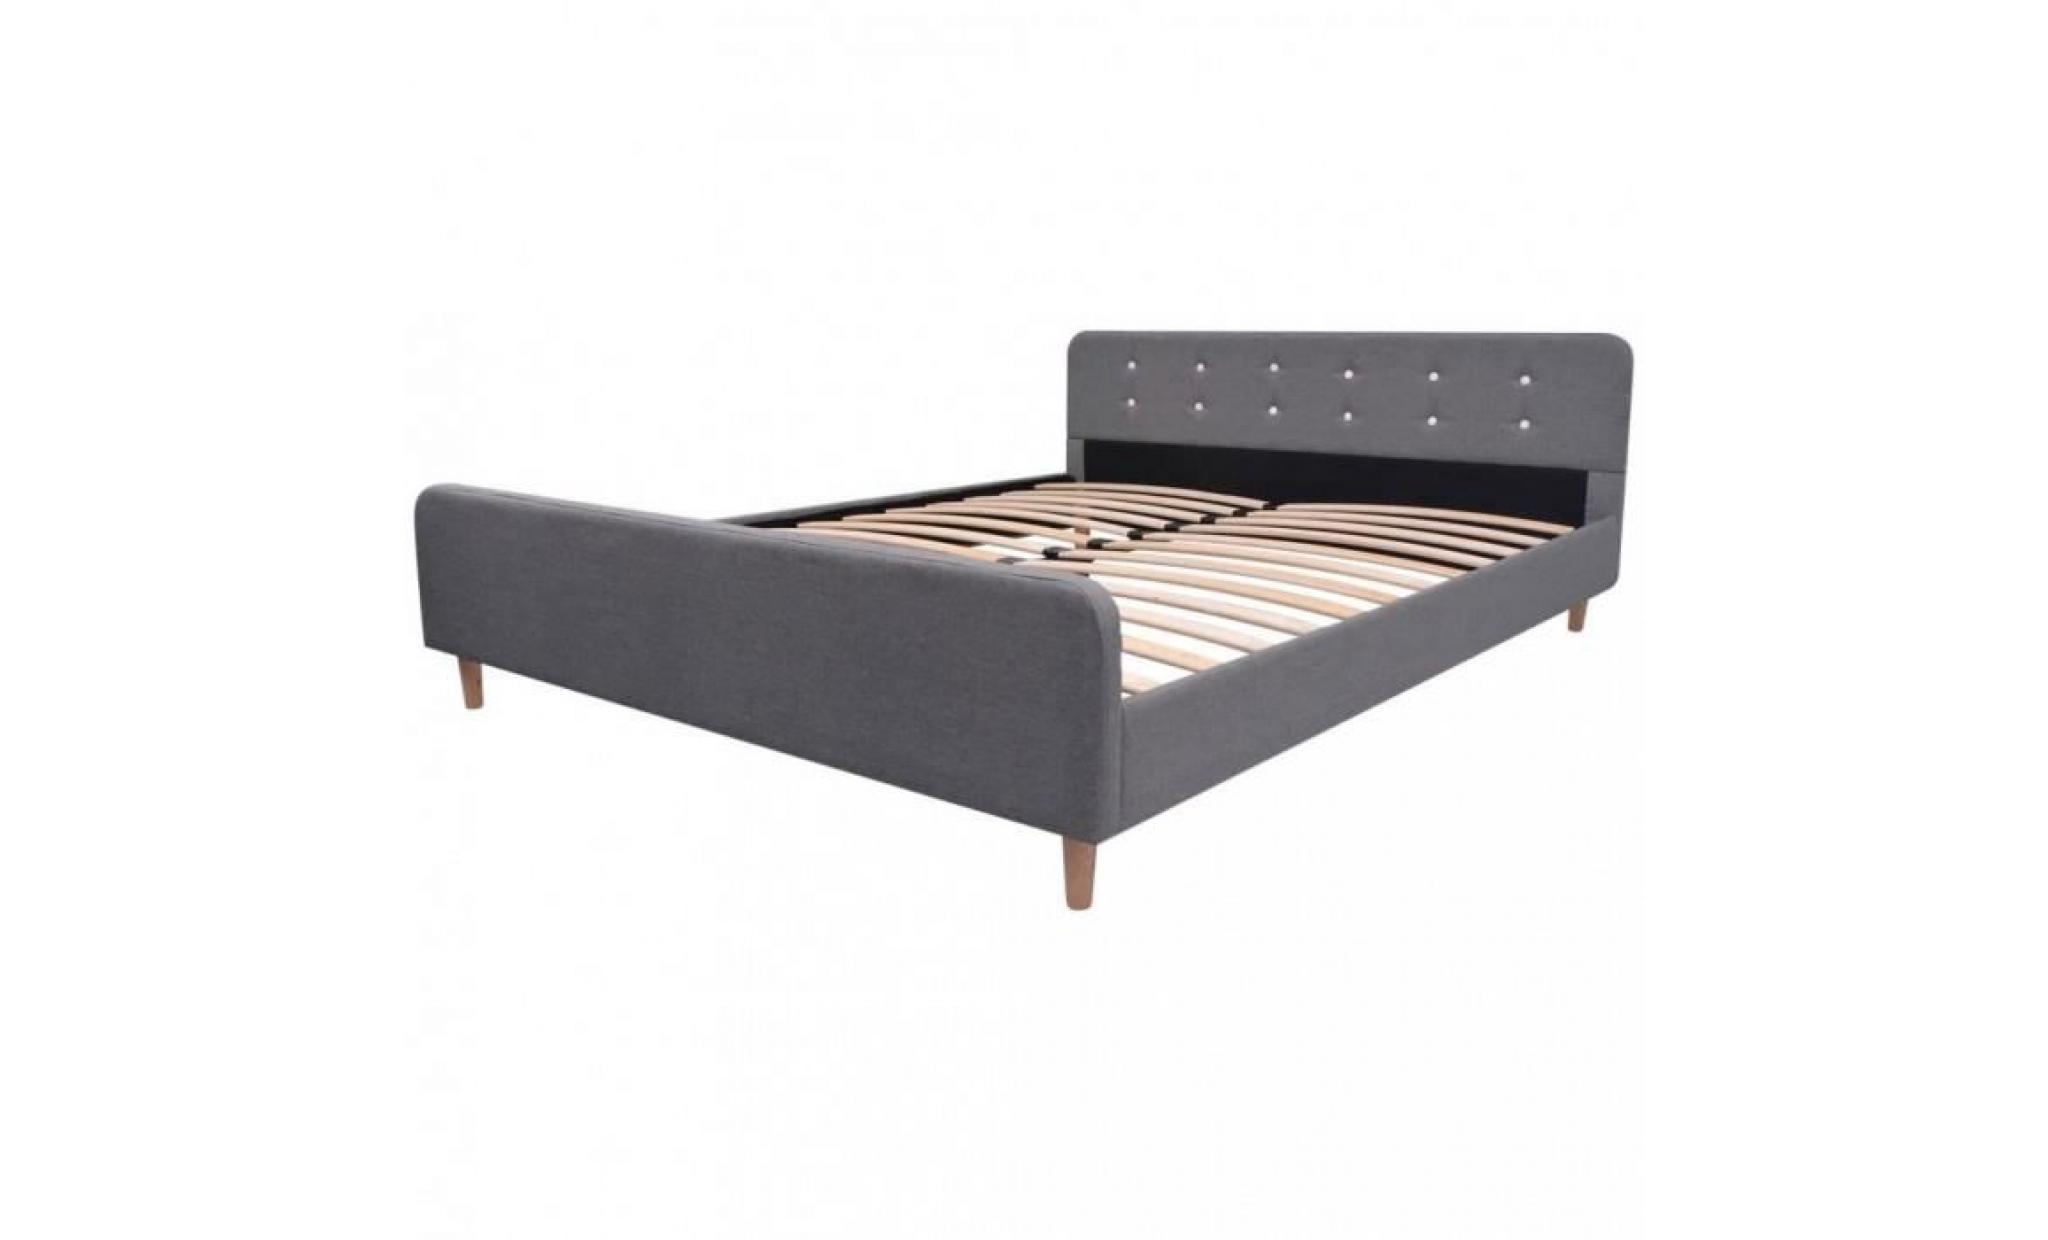 r94 ce lit en bois robuste recouvert de tissu possede un design simple mais elegant et une structure solide qui conviend